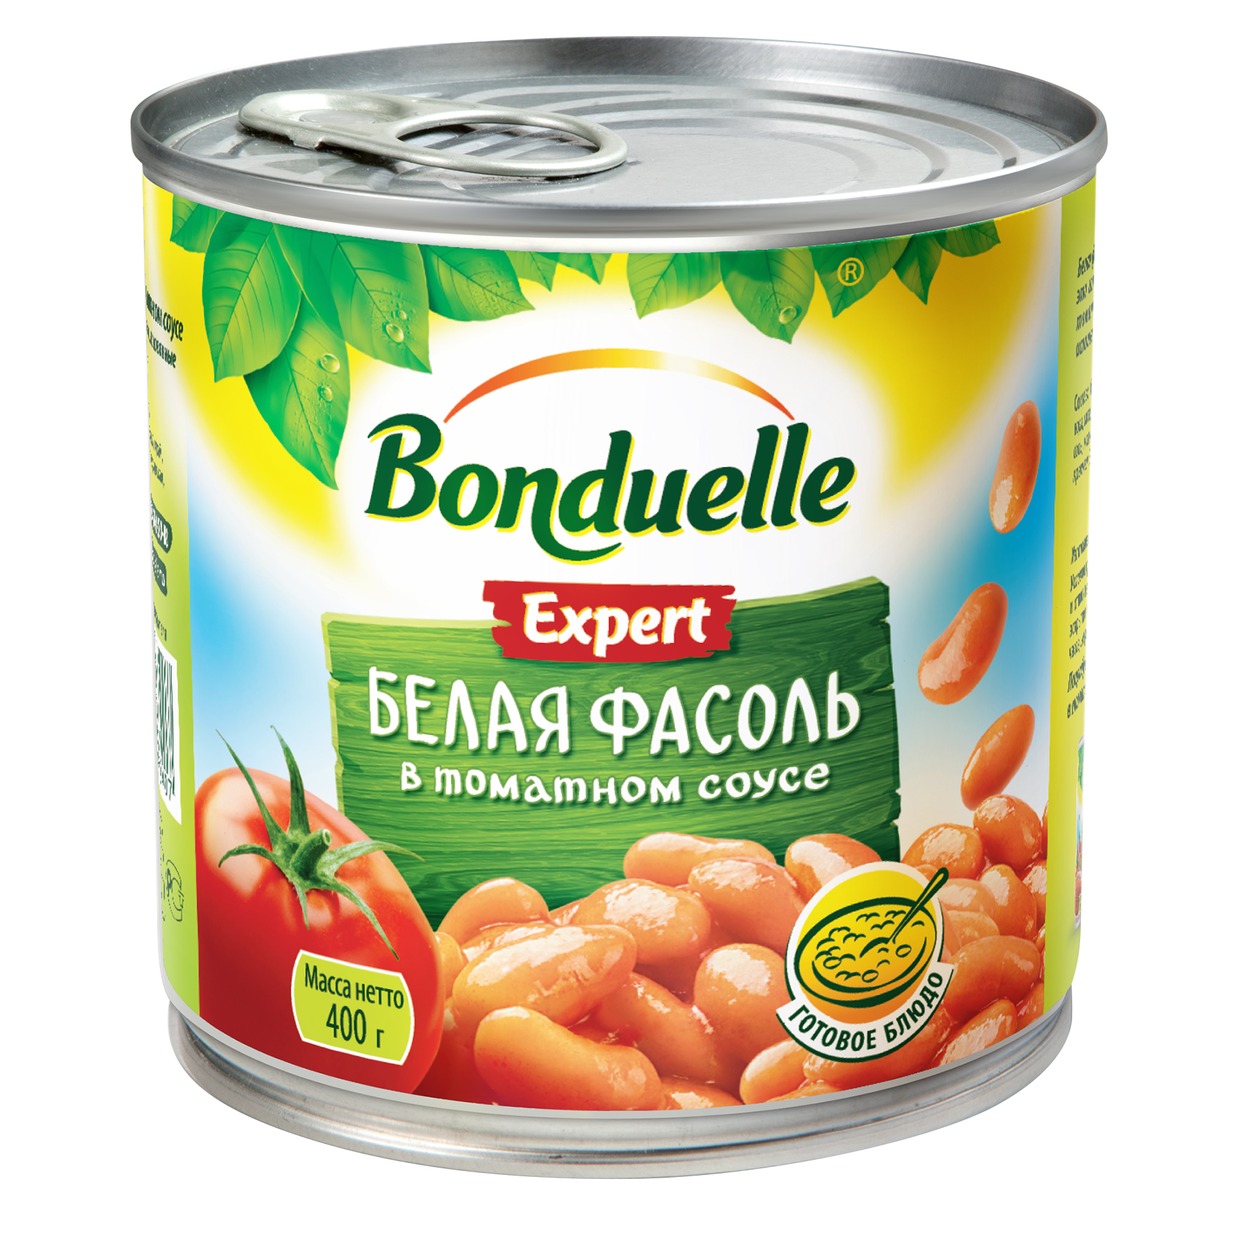 Фасоль белая в томатном соуе, Bonduelle, 425 мл по акции в Пятерочке